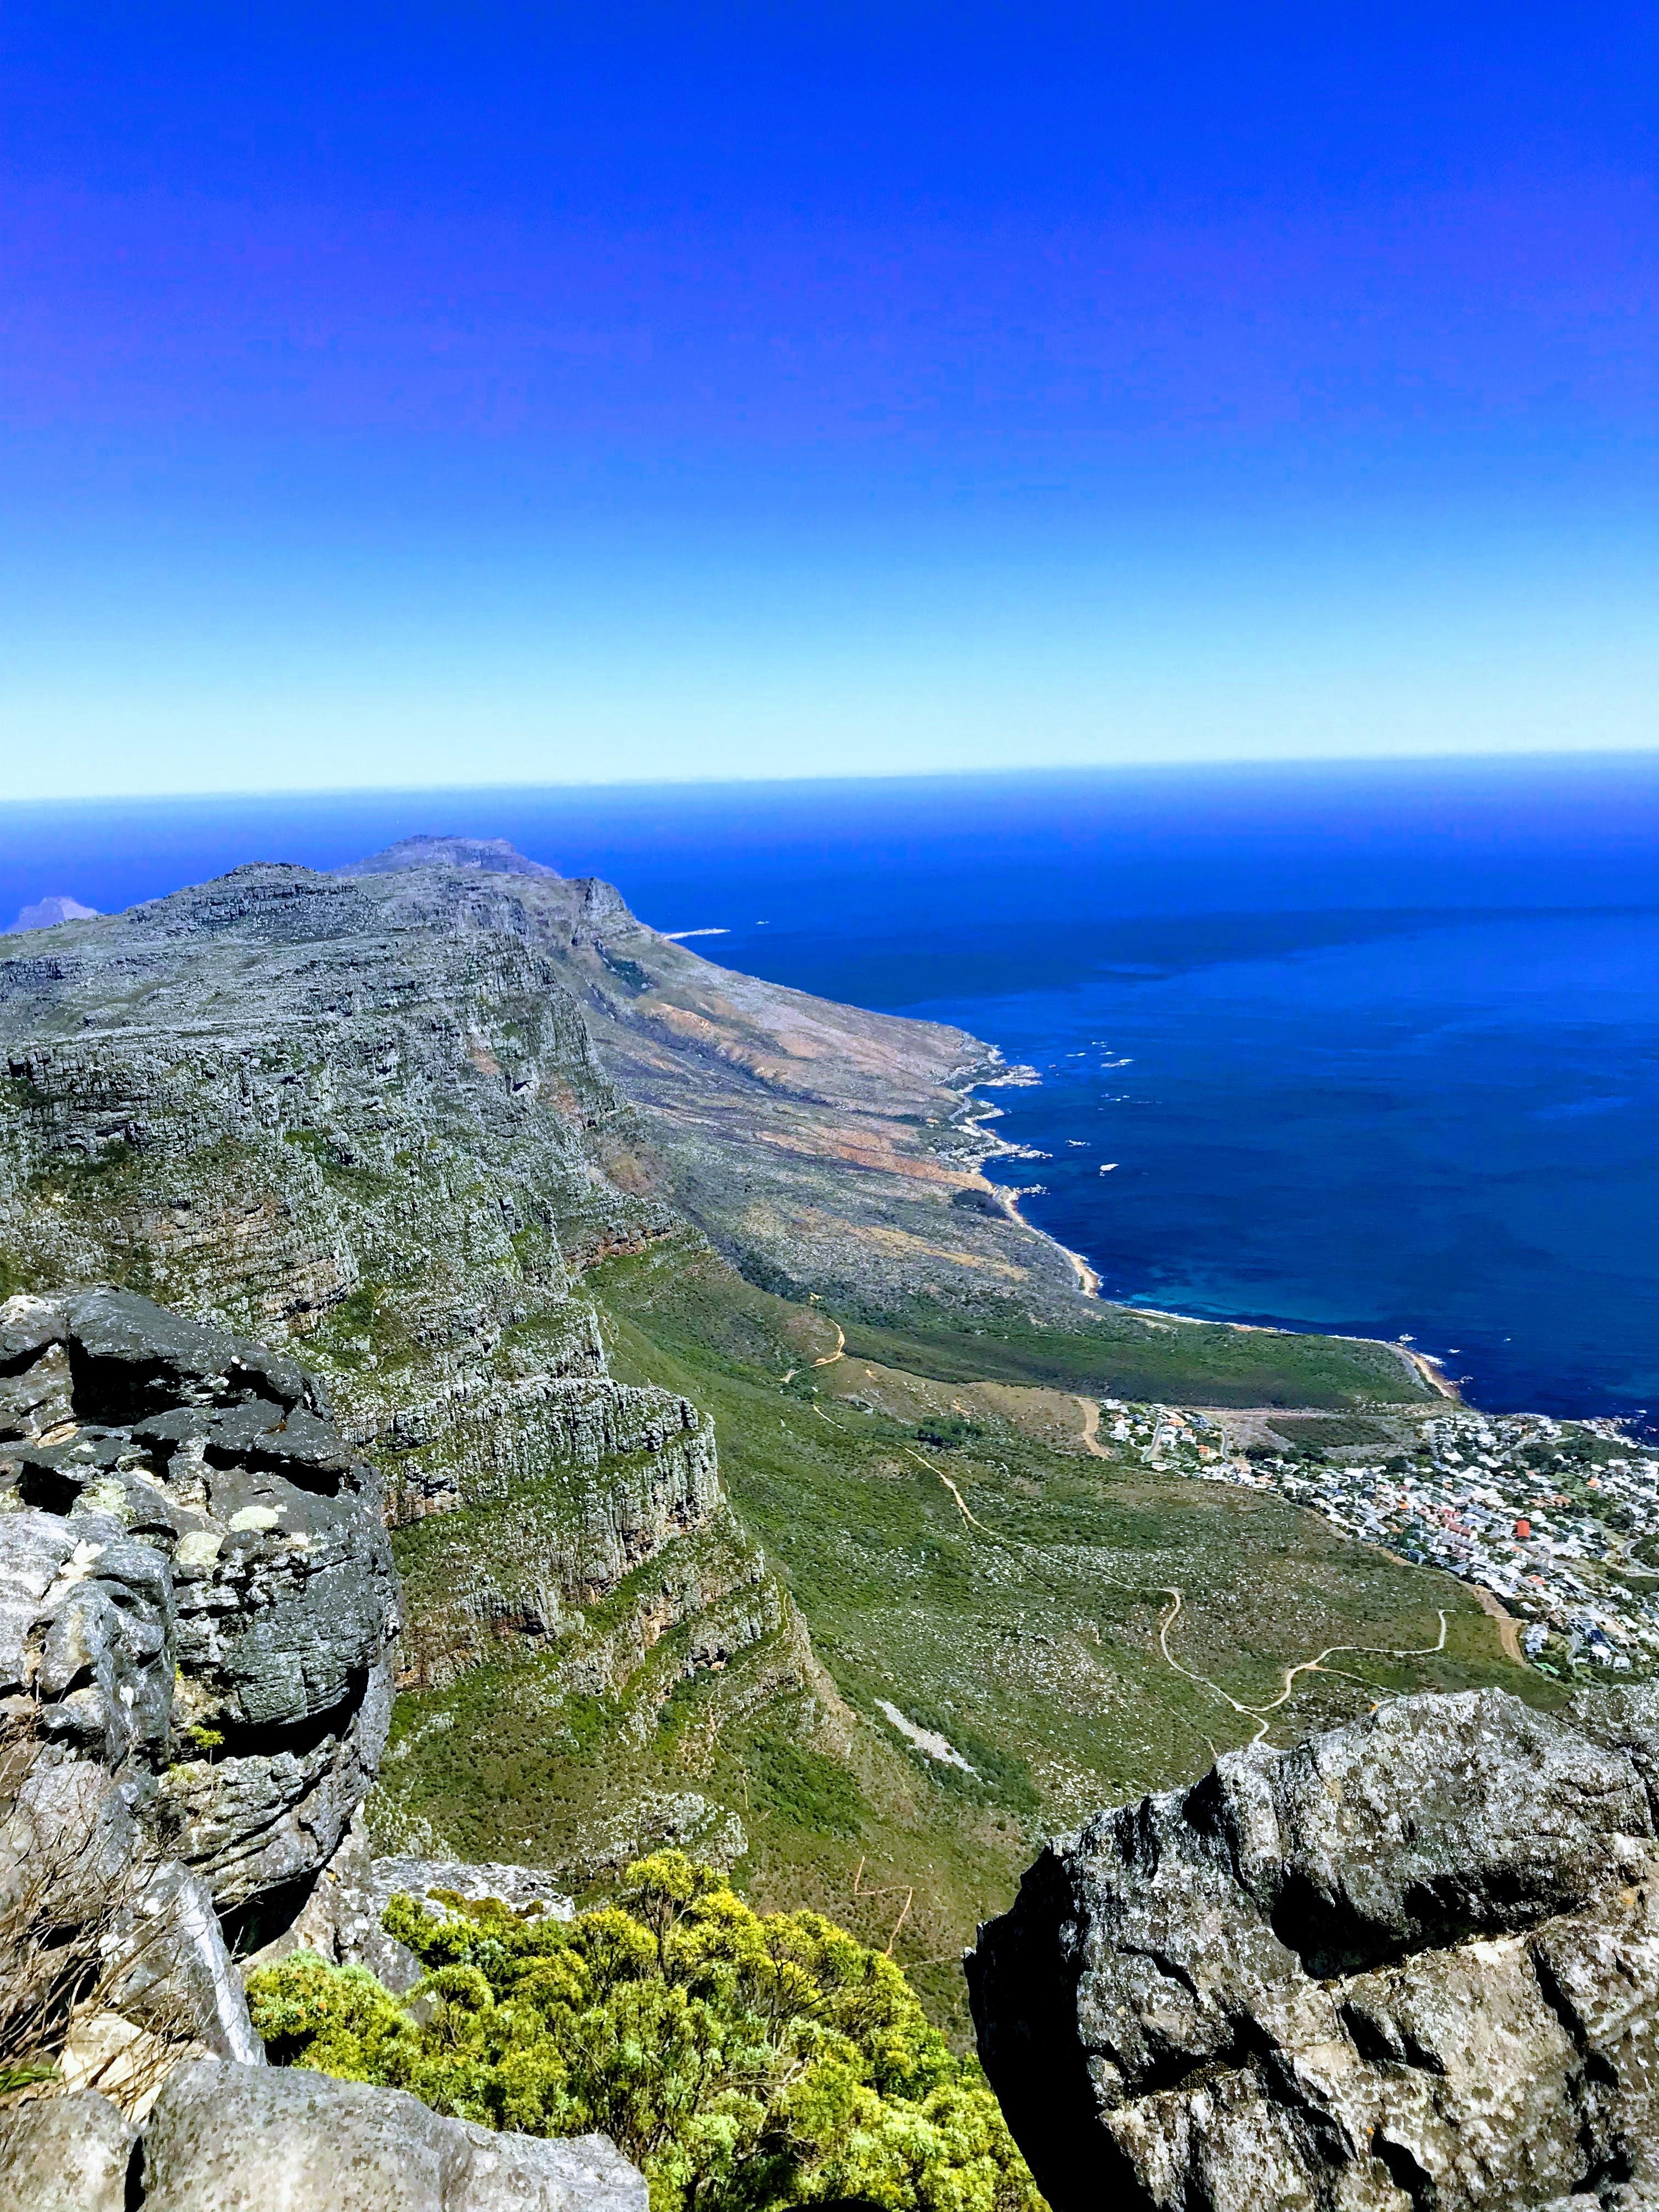 Blick vom Tafelberg in #capetown. Bis heute meine ultimative Traumreise und Destination. #naturliebe #travelchallenge